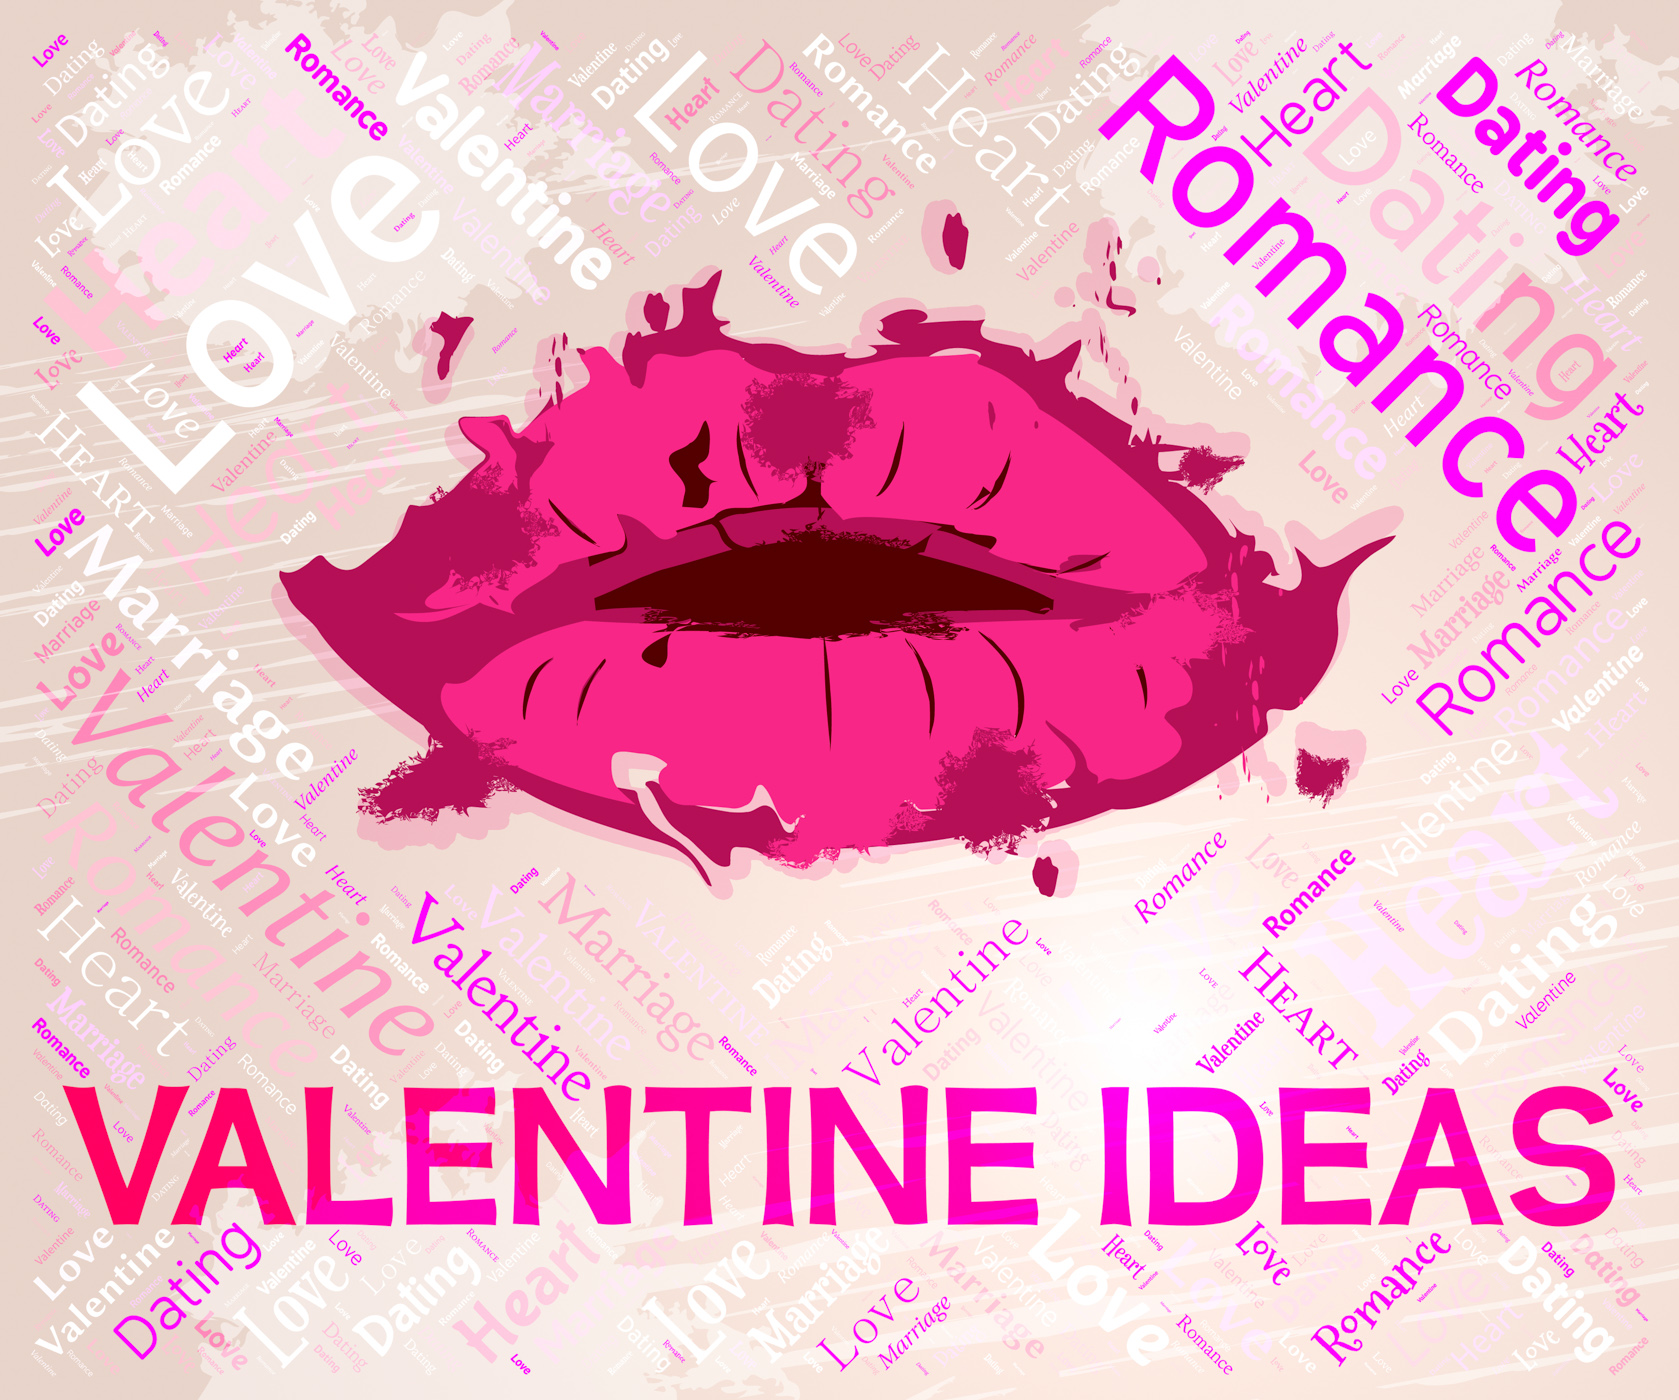 Valentine ideas indicates valentines day and boyfriend photo